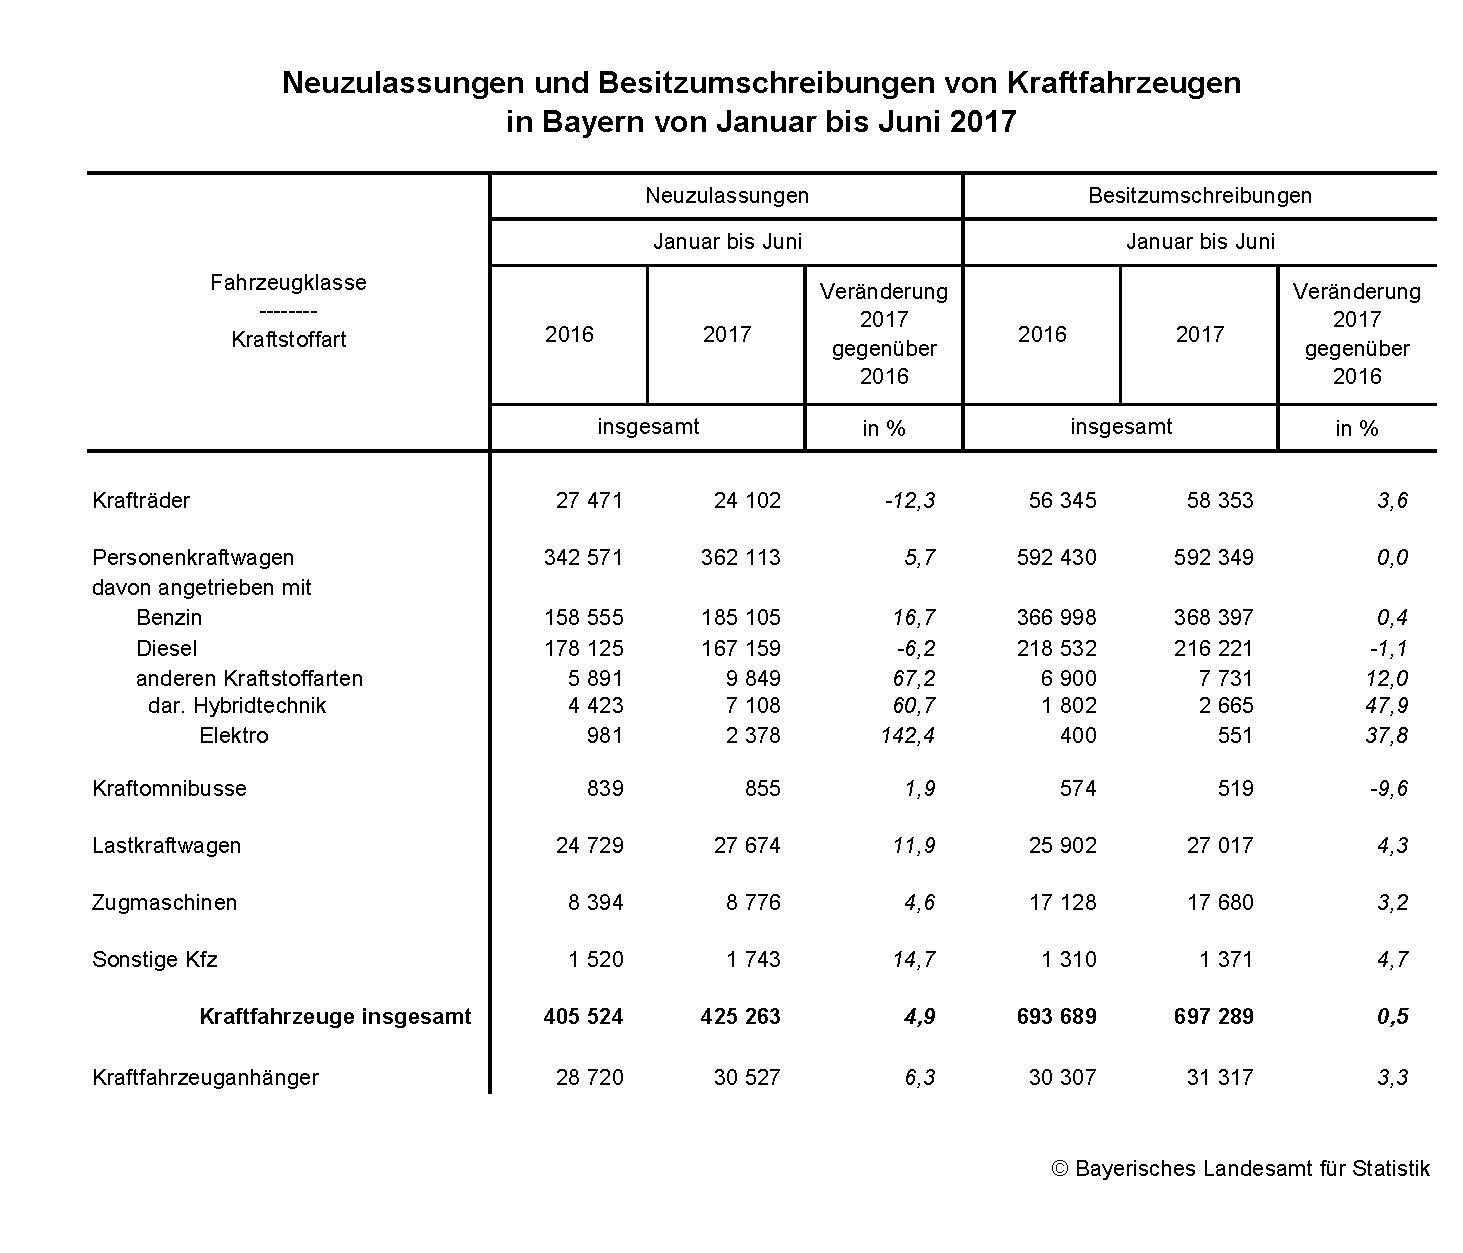 Neuzulassungen und Besitzumschreibungen von Kraftfahrzeugen in Bayern von Januar bis Juni 2017